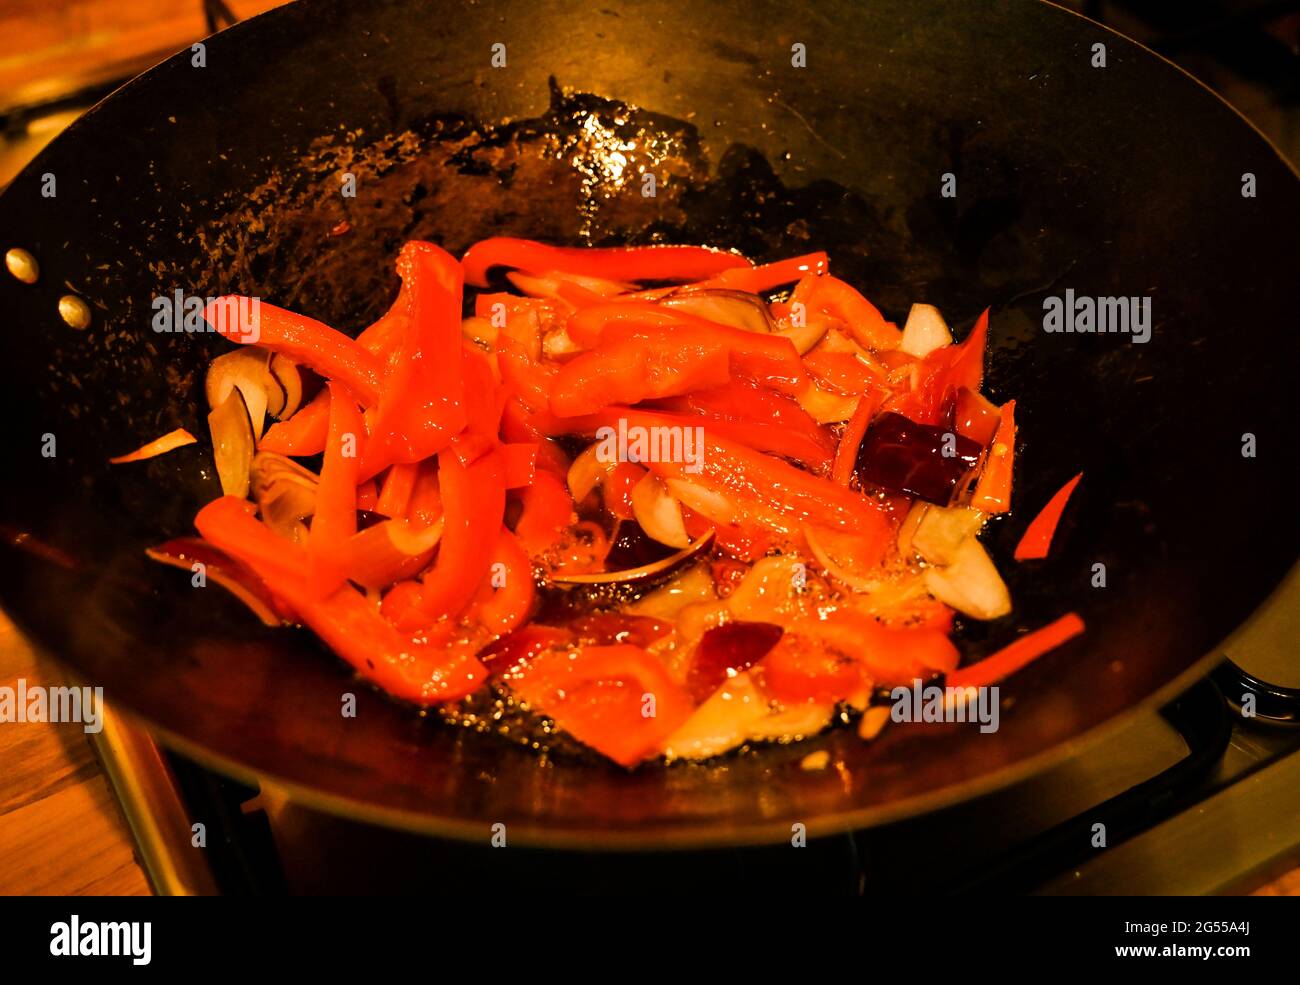 Home cucina mescolare fritto Singapore Noodles con maiale, gamberi e uova noodles peperoni rossi funghi fotografia presa da Simon Dack Foto Stock